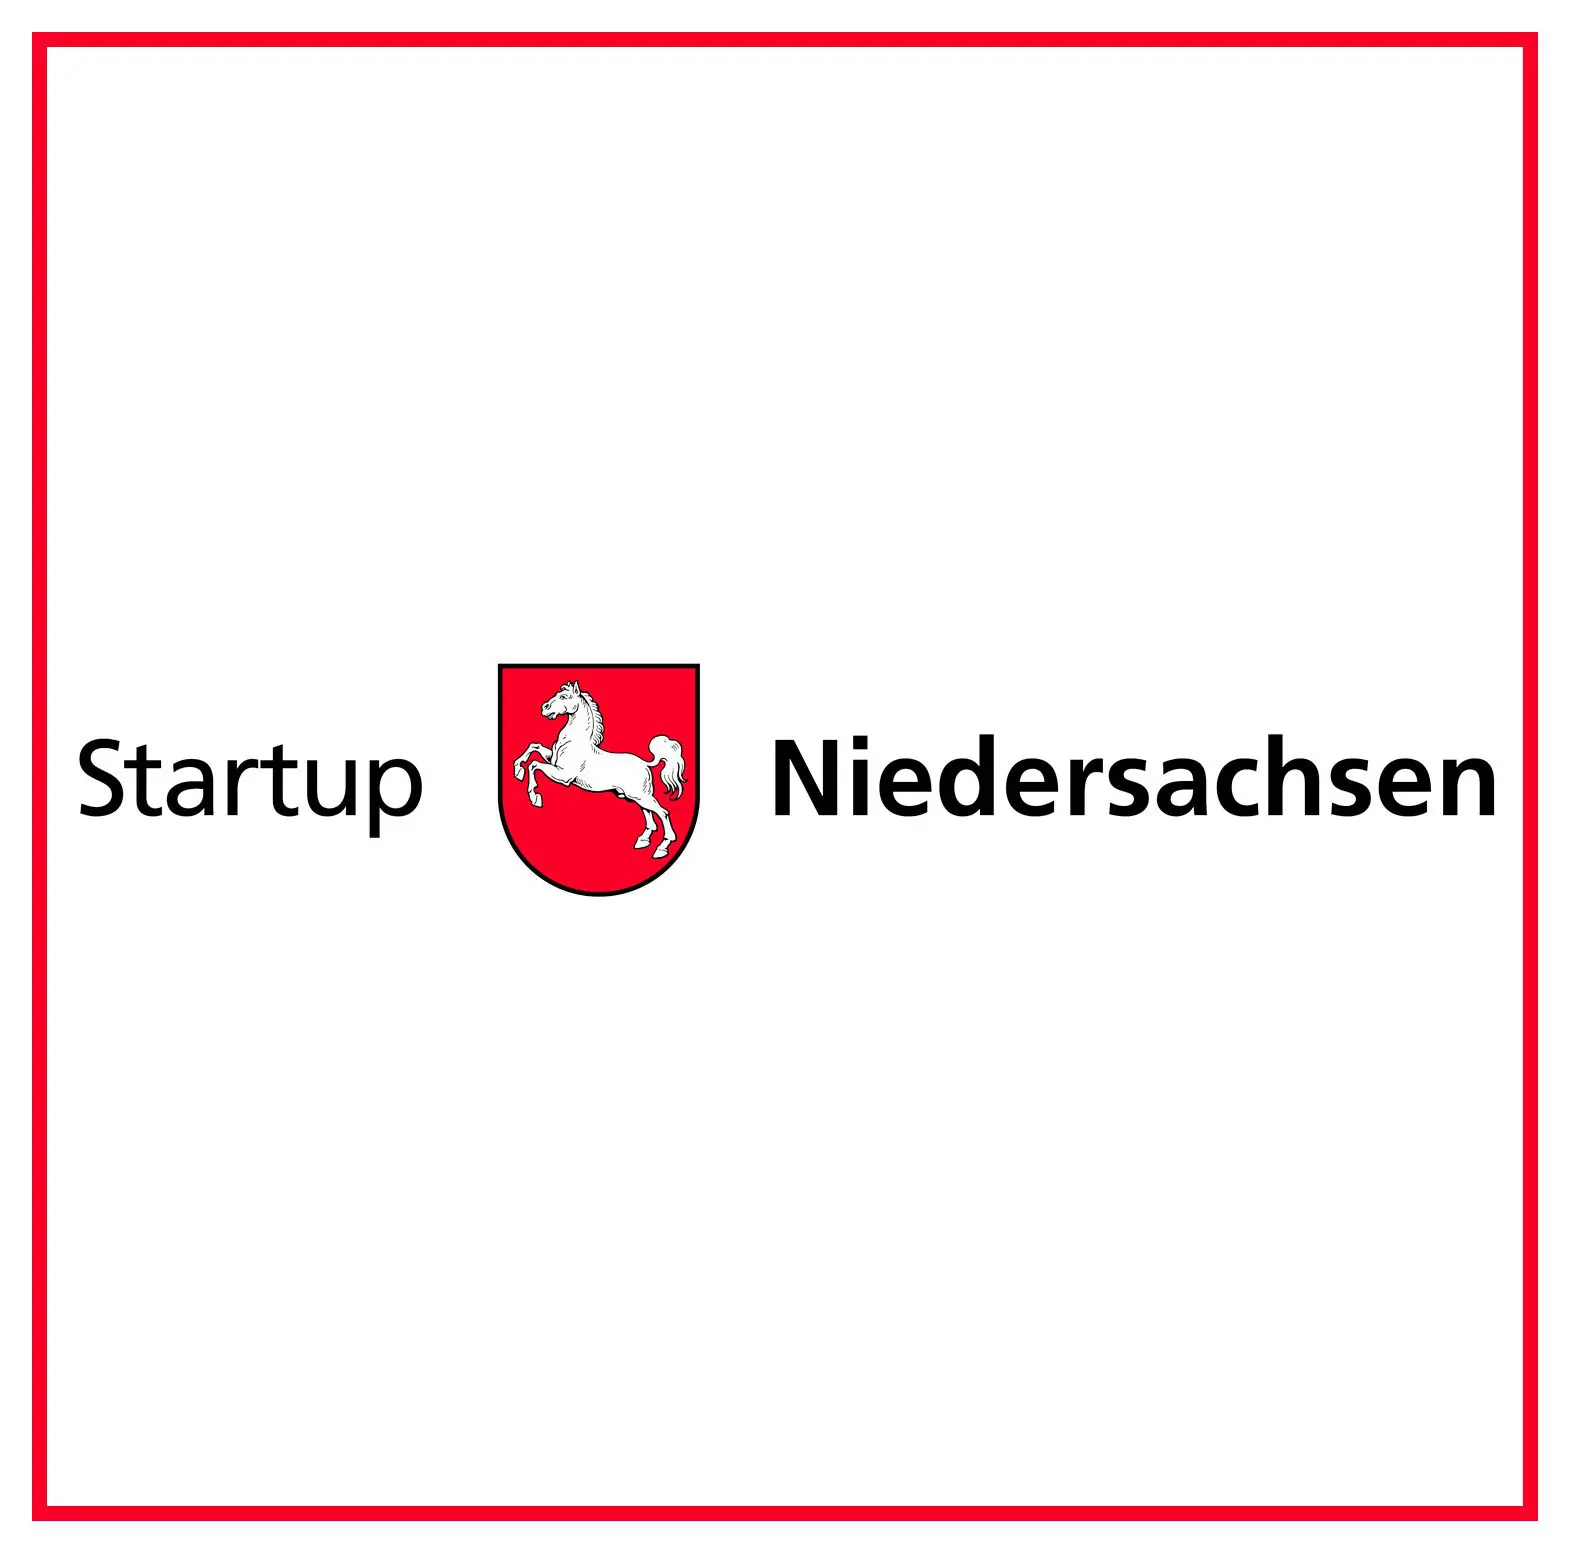 Logo startup.niedersachsen